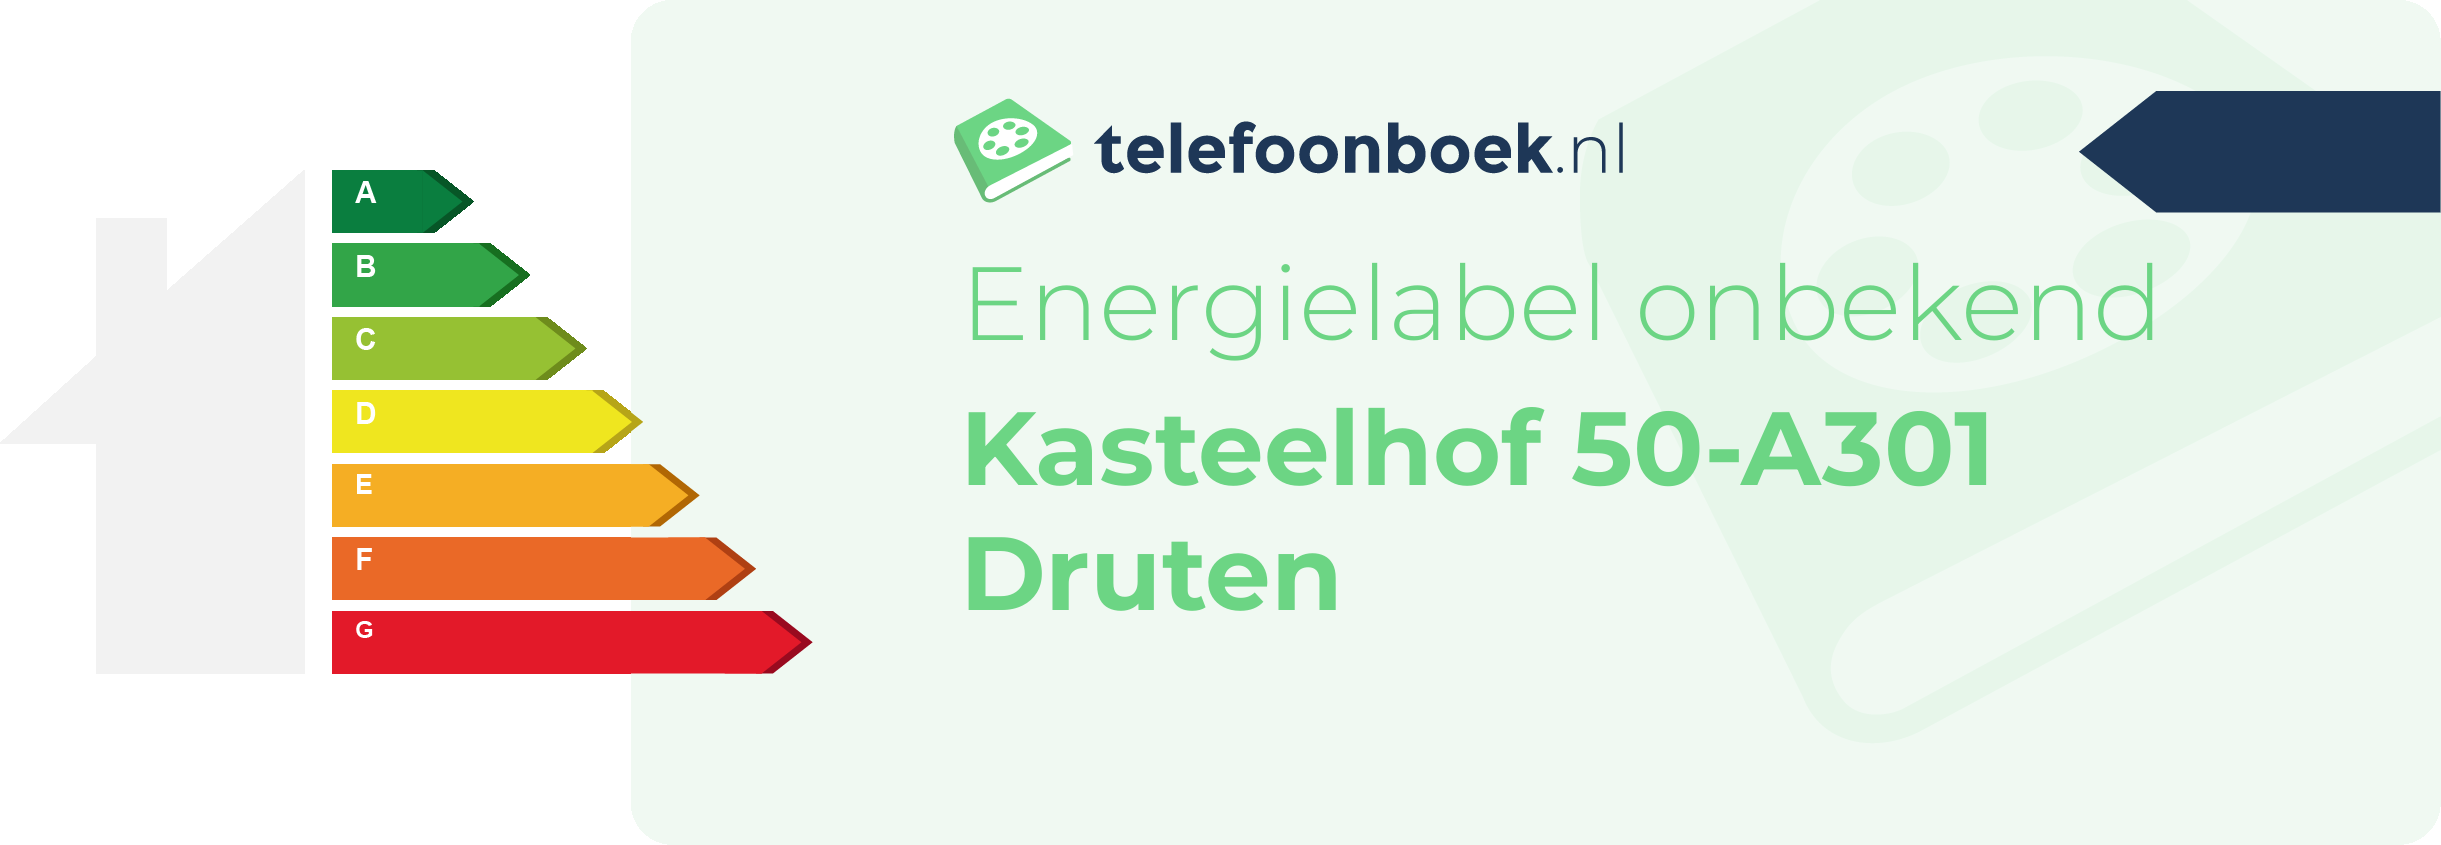 Energielabel Kasteelhof 50-A301 Druten